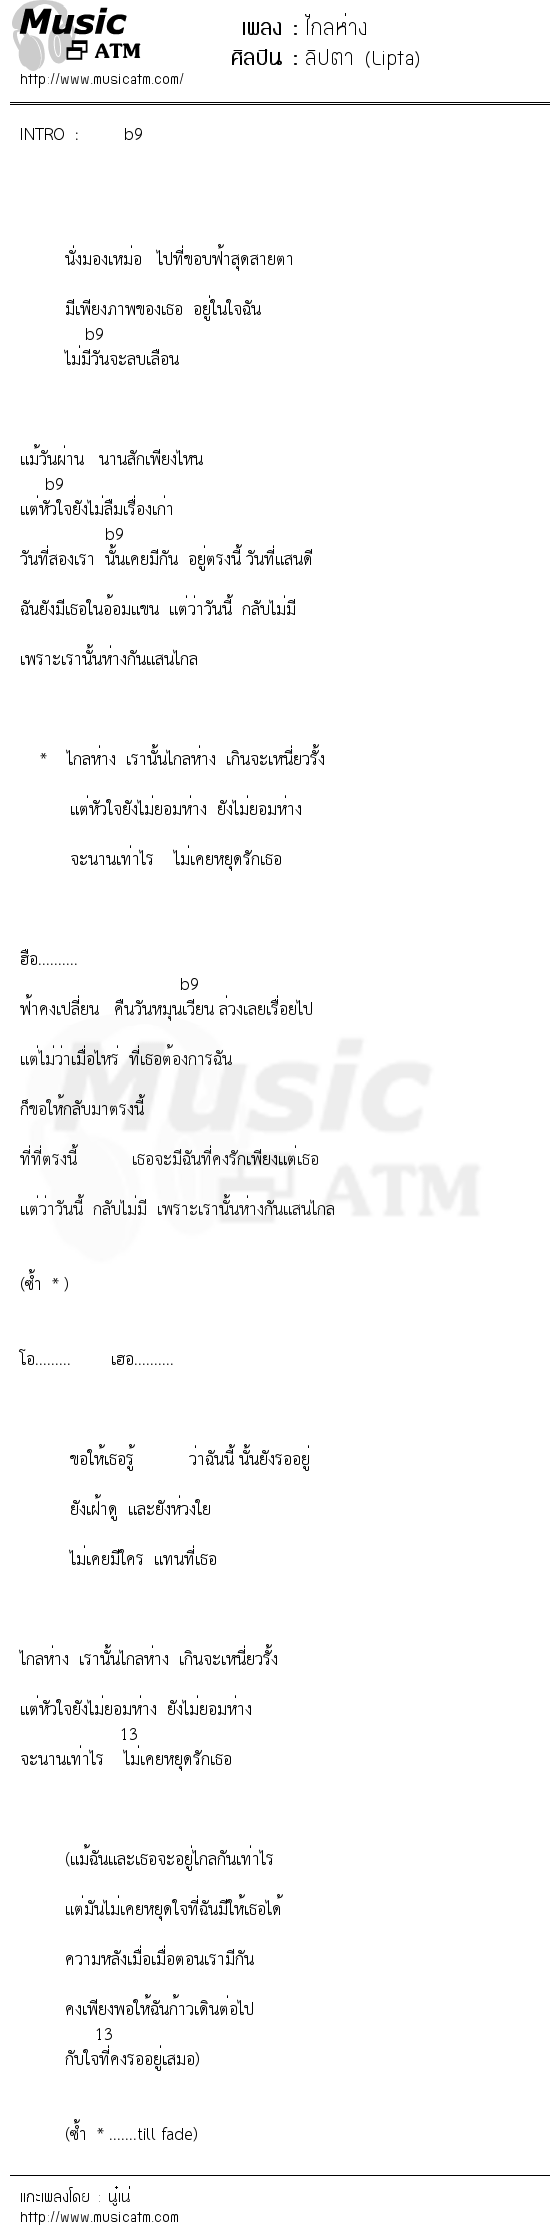 เนื้อเพลง ไกลห่าง - ลิปตา (Lipta) | เพลงไทย